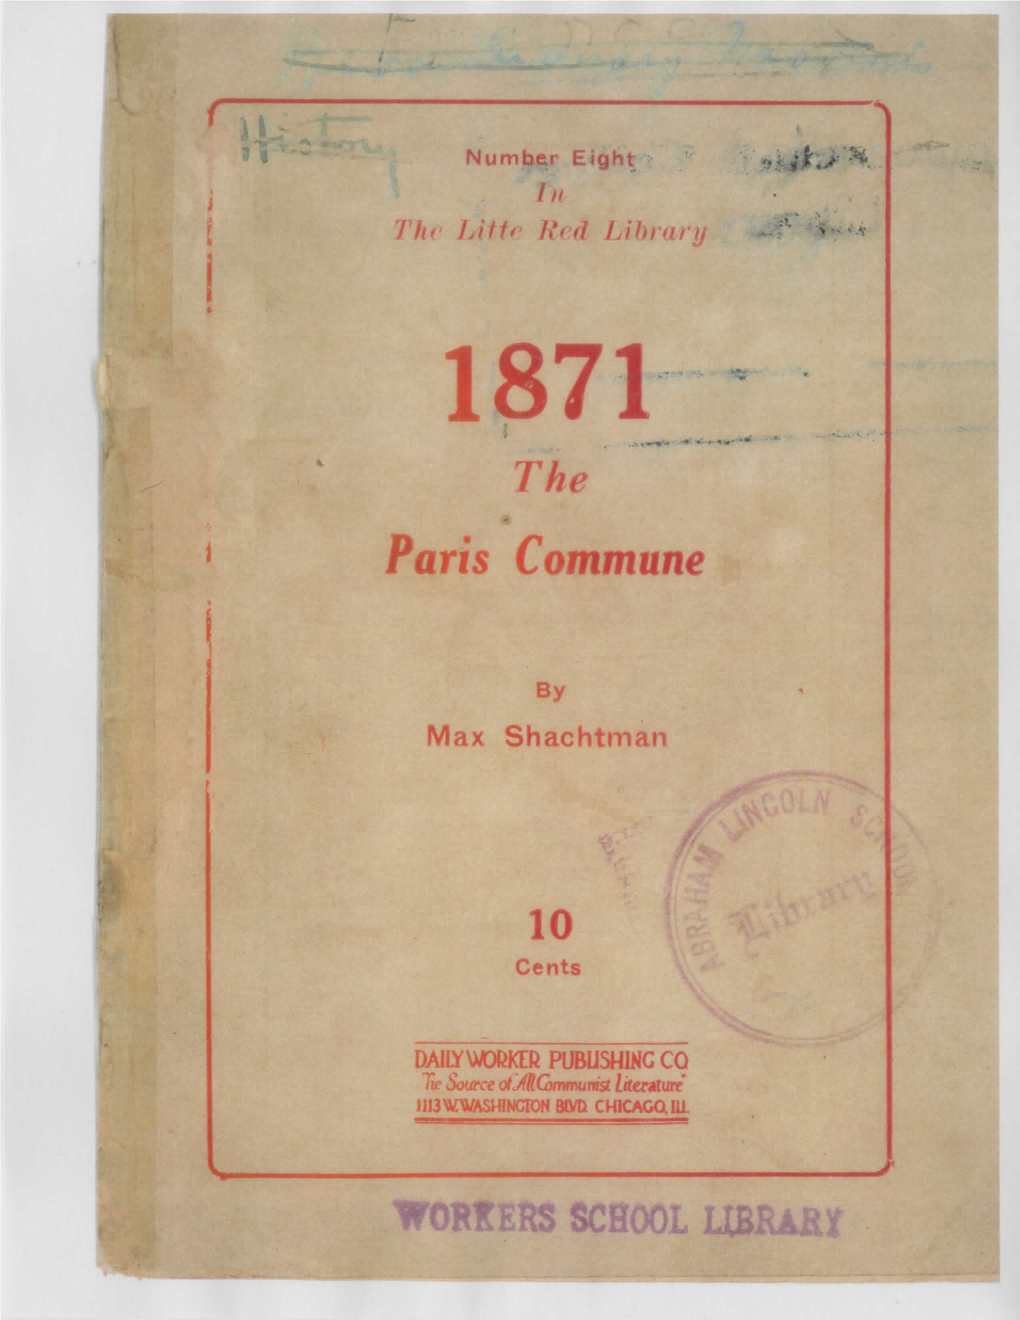 8 the Paris Commune